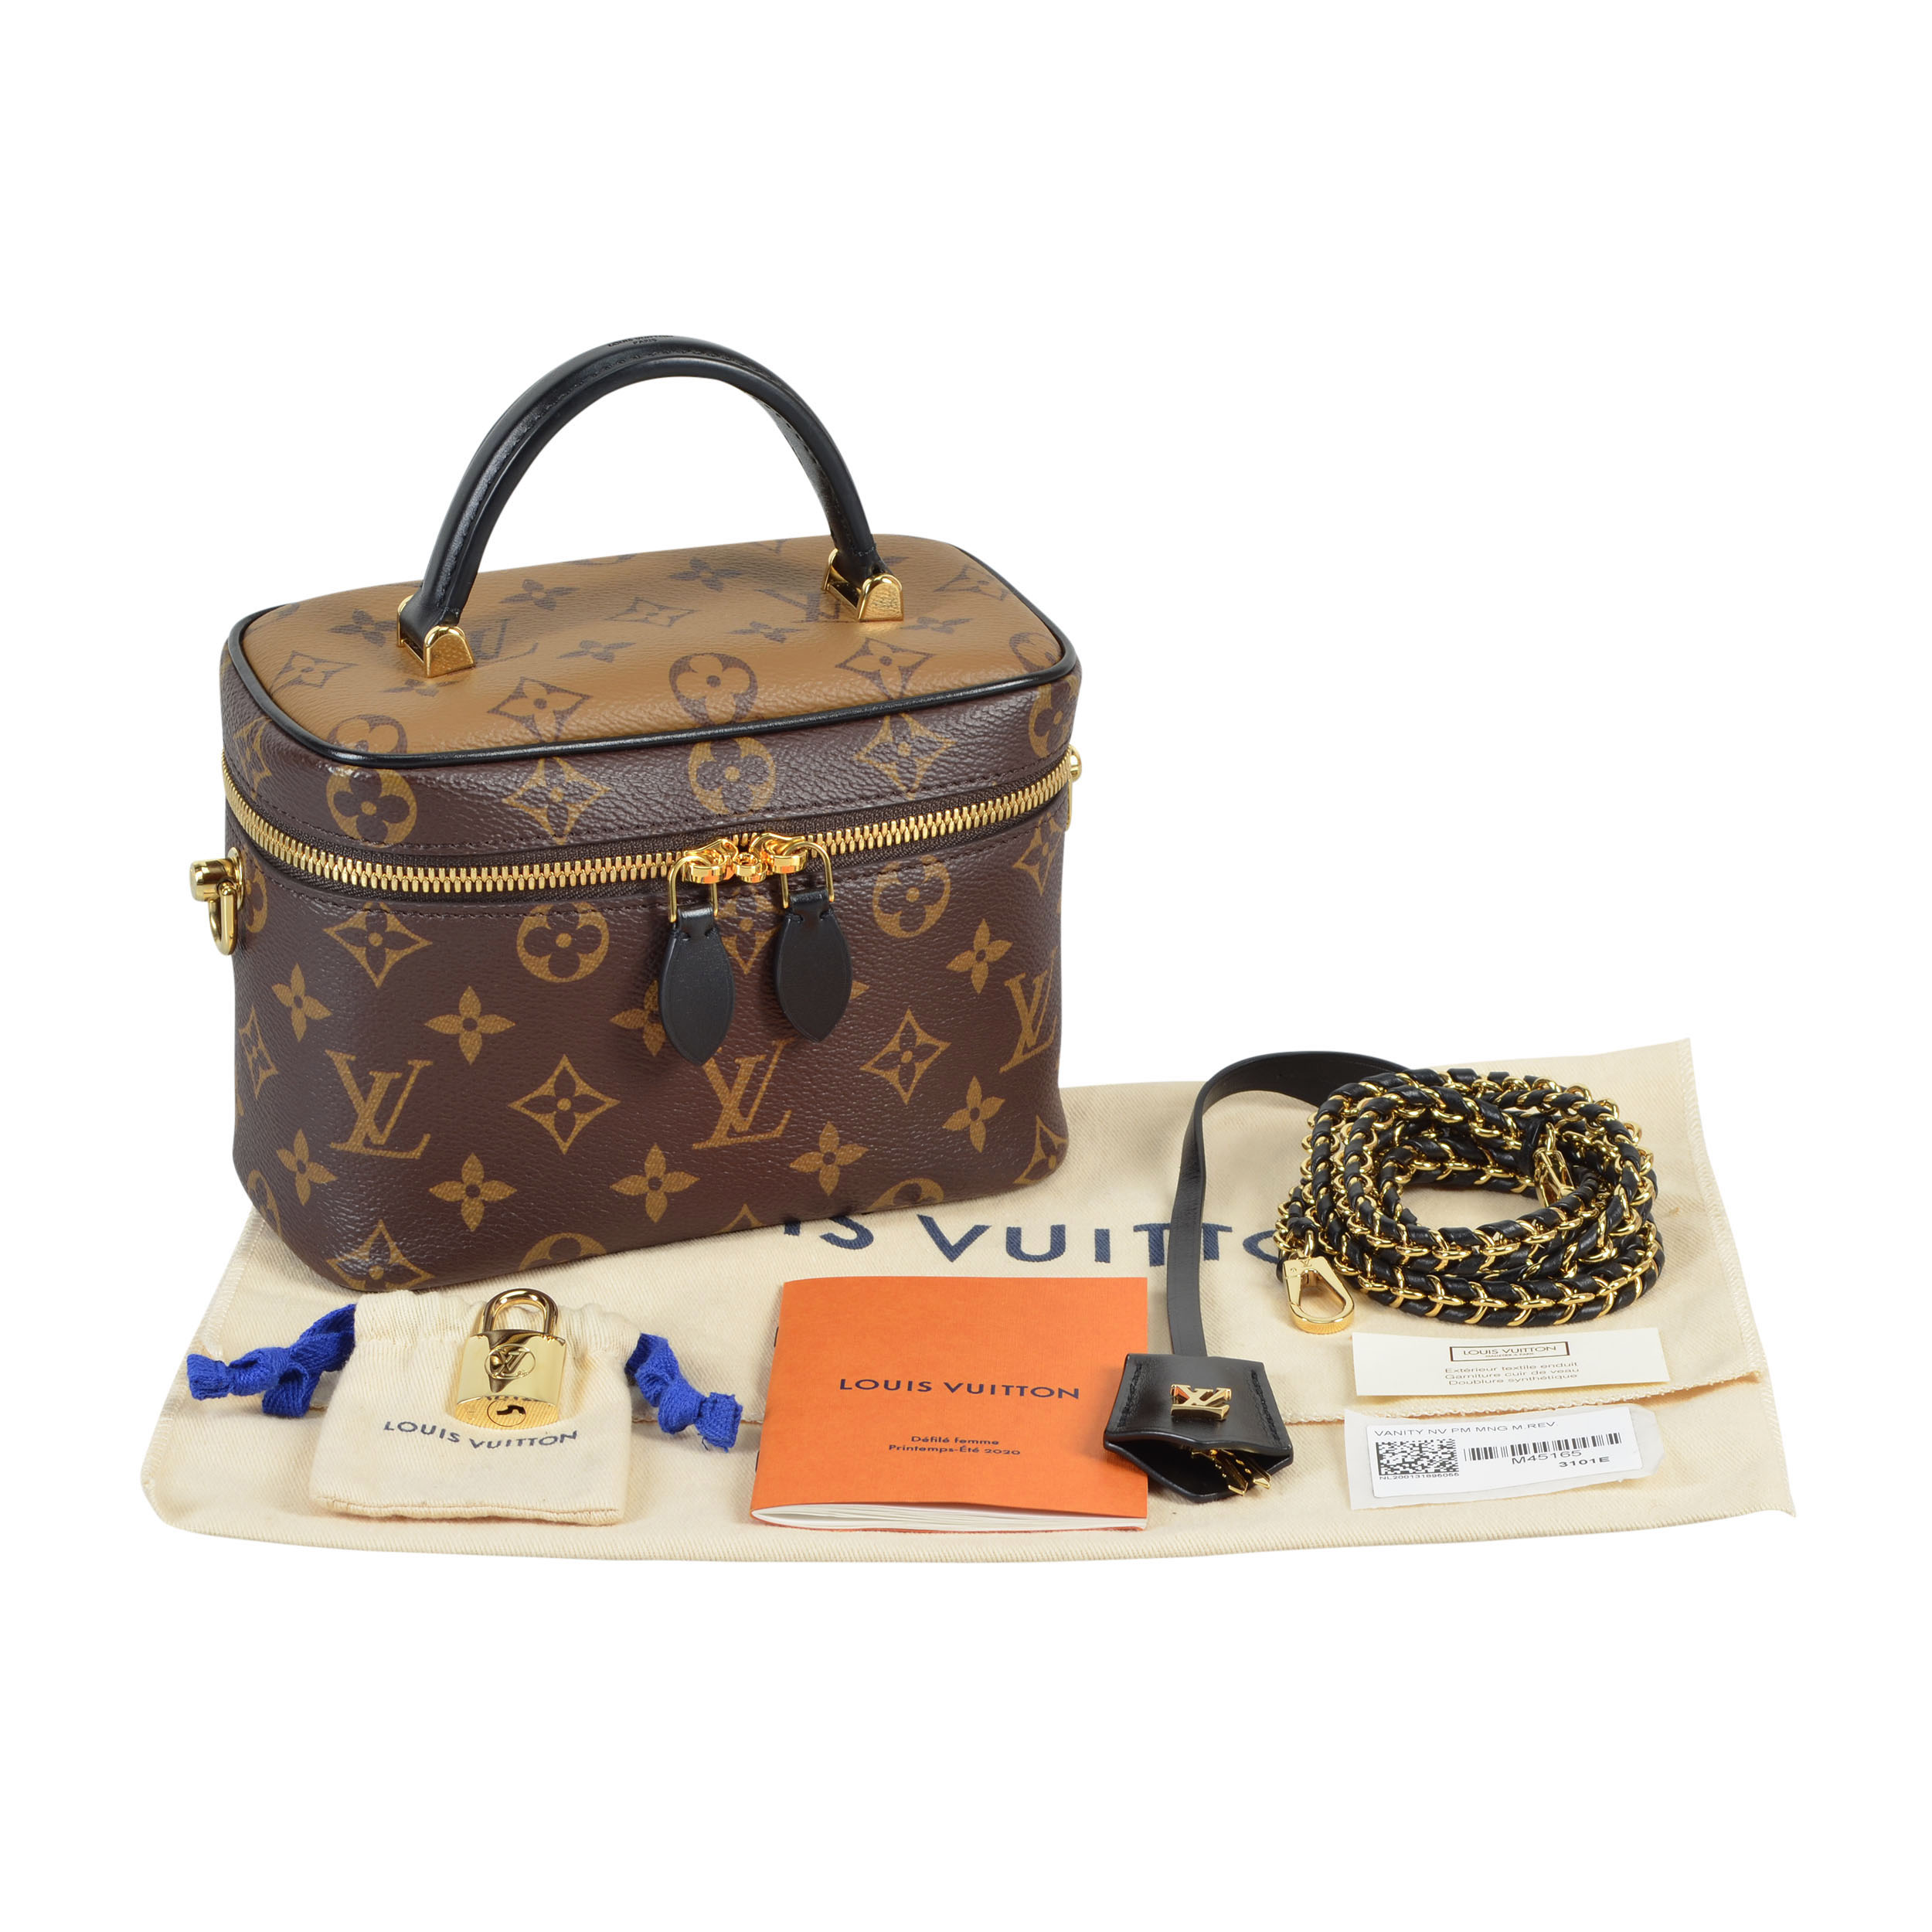 Stilvoller Begleiter: Großes Tuch von Louis Vuitton - Lillytime